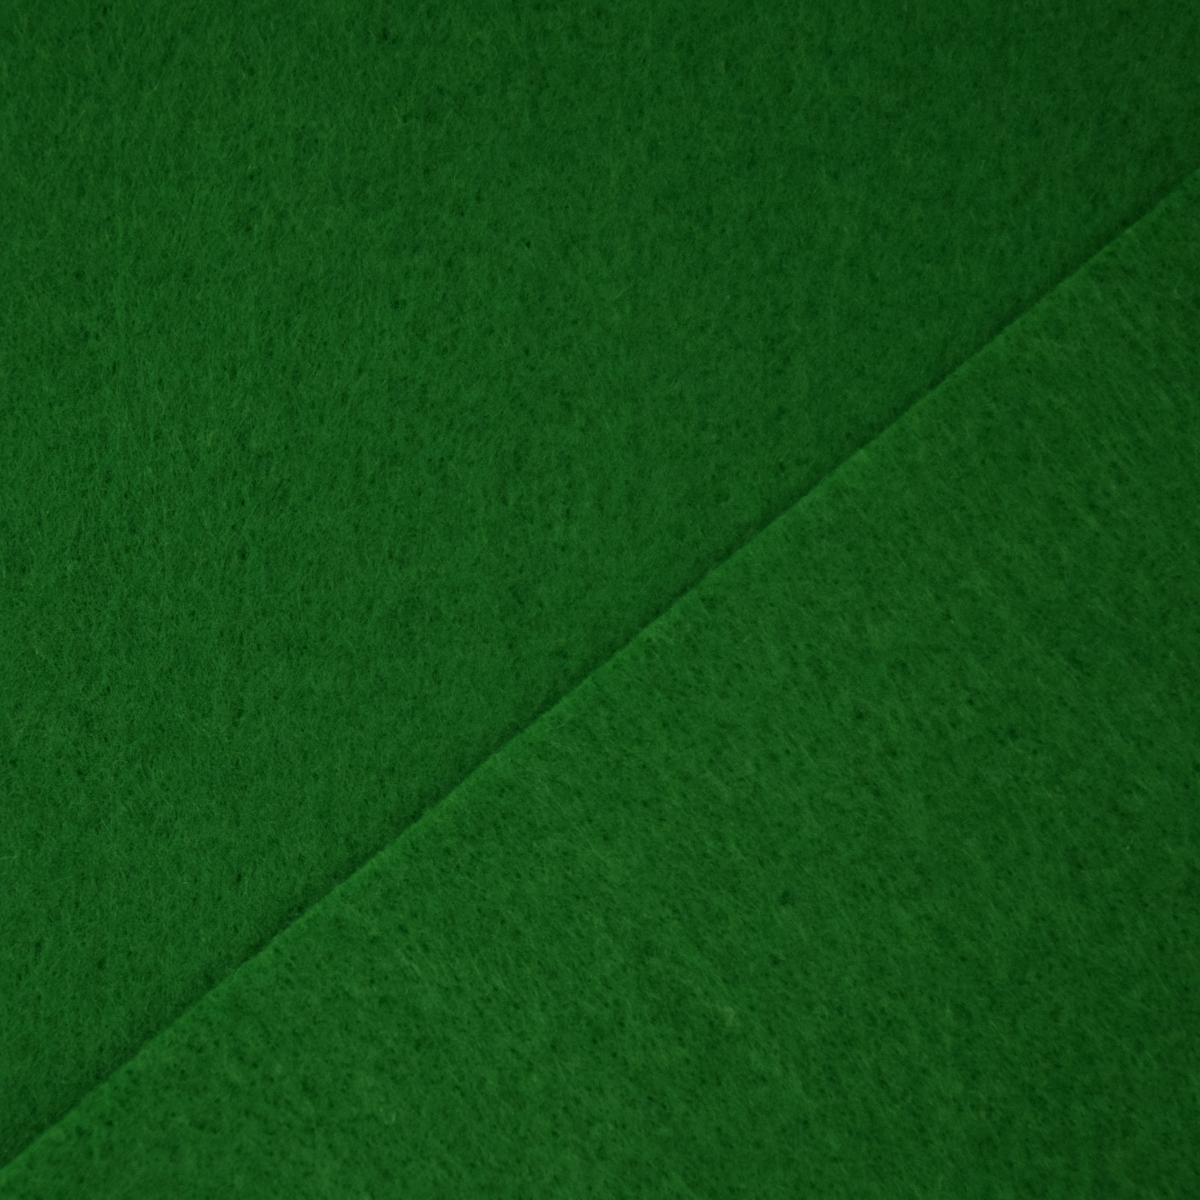 arkCRAFT Forest Green Felt Sheets, A4 Size, 5 Per Pack